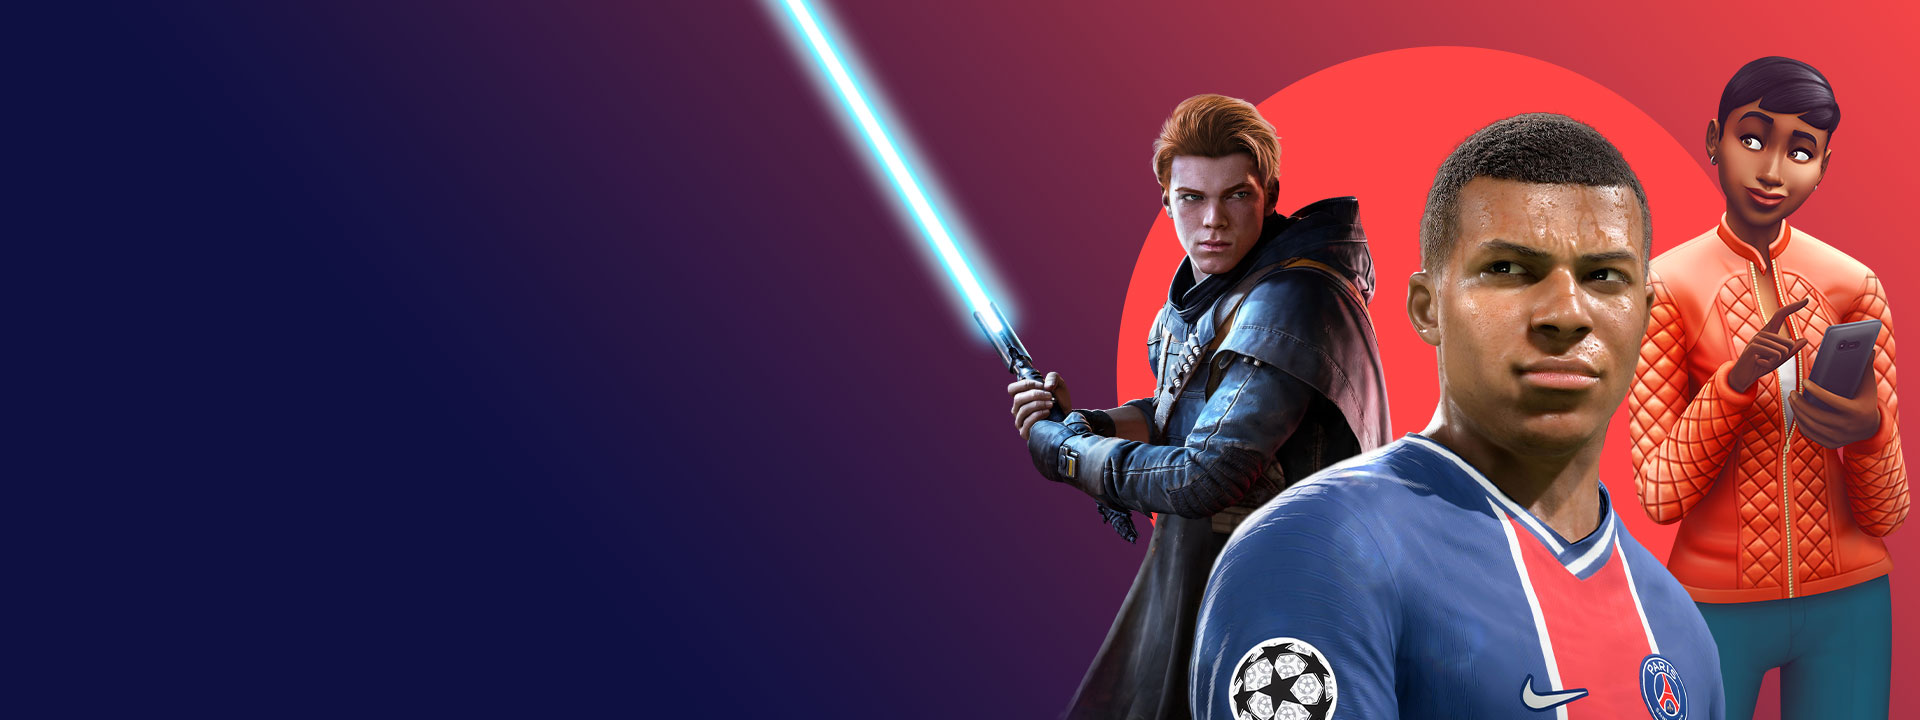 Umělecké vyobrazení z her od EA, které jsou k dispozici v rámci předplatného Xbox Game Pass, včetně Star Wars Jedi: Fallen Order, FIFA 22 a The Sims 4.